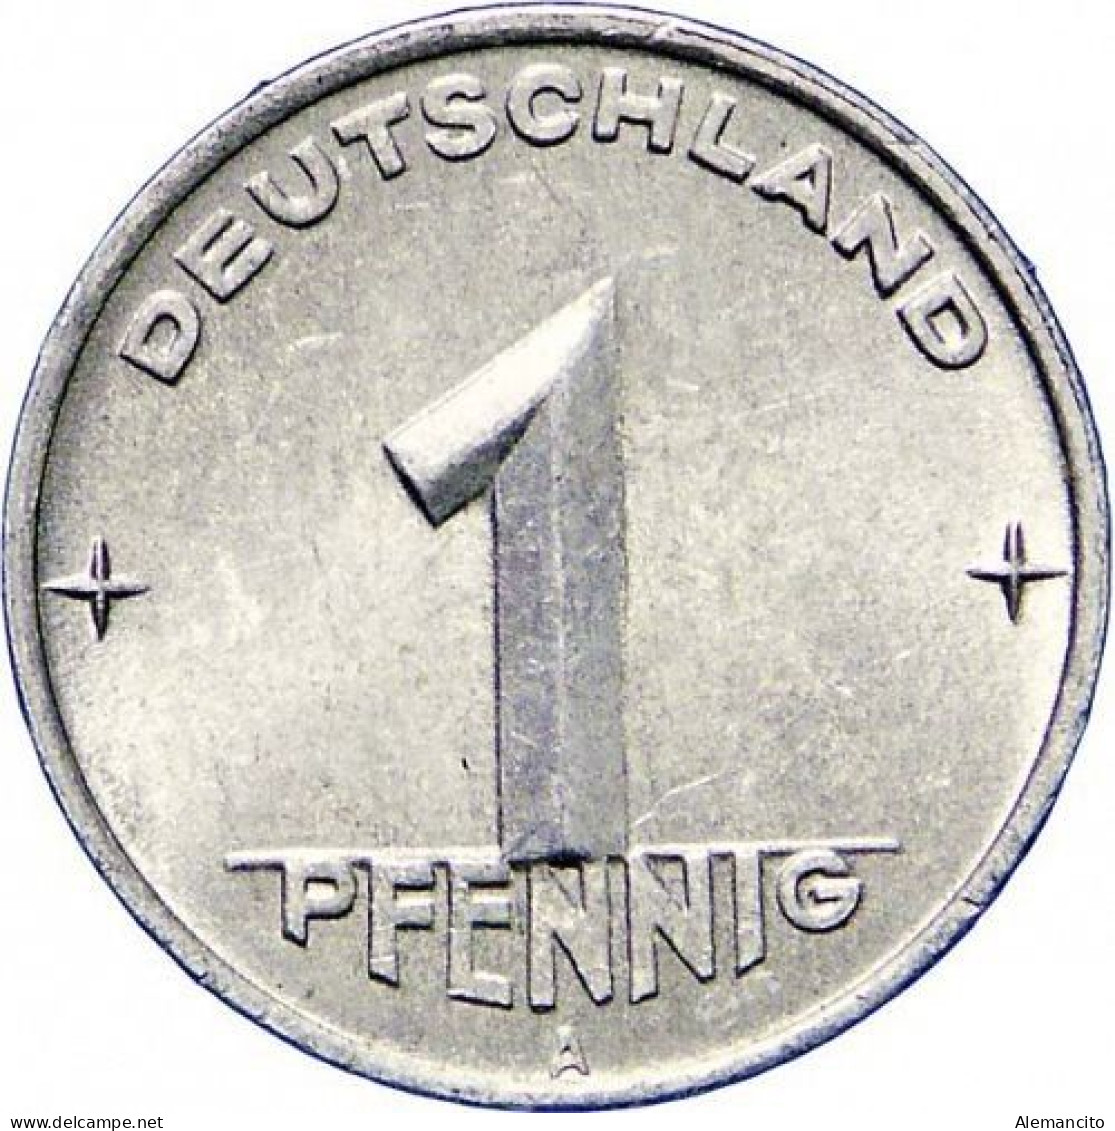 REPUBLICA DEMOCRATICA DE ALEMANIA ( DDR ) MONEDA DE 1 PFENNING AÑO 1950 CECA-A - SIN CIRCULAR - 1 Pfennig